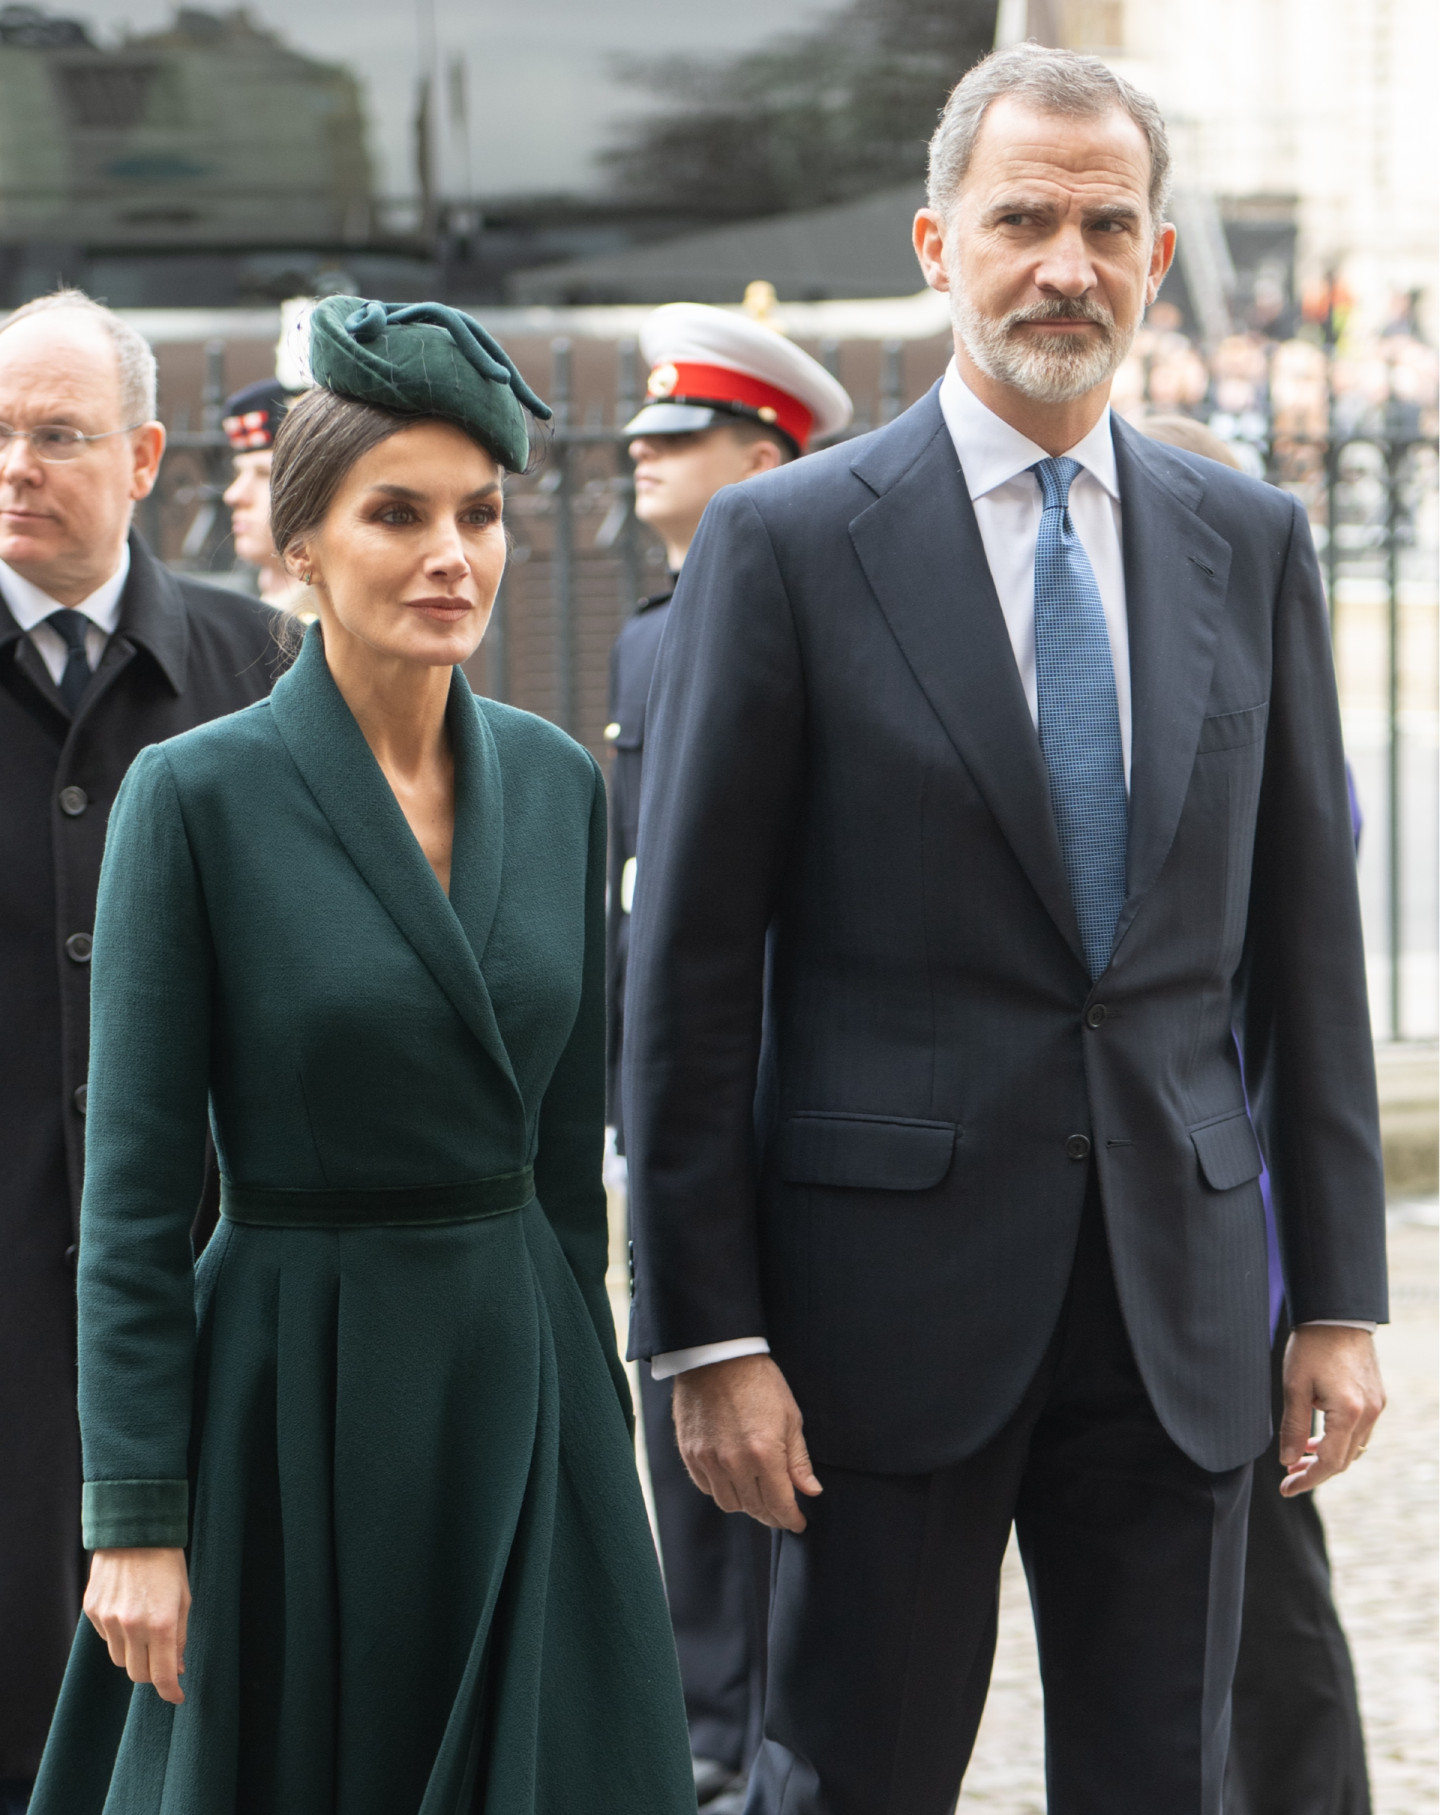 Летиция, королева-консорт Испании, и Филипп VI, король Испании, на поминальной службе по принцу Филиппу, 29 марта 2022 года